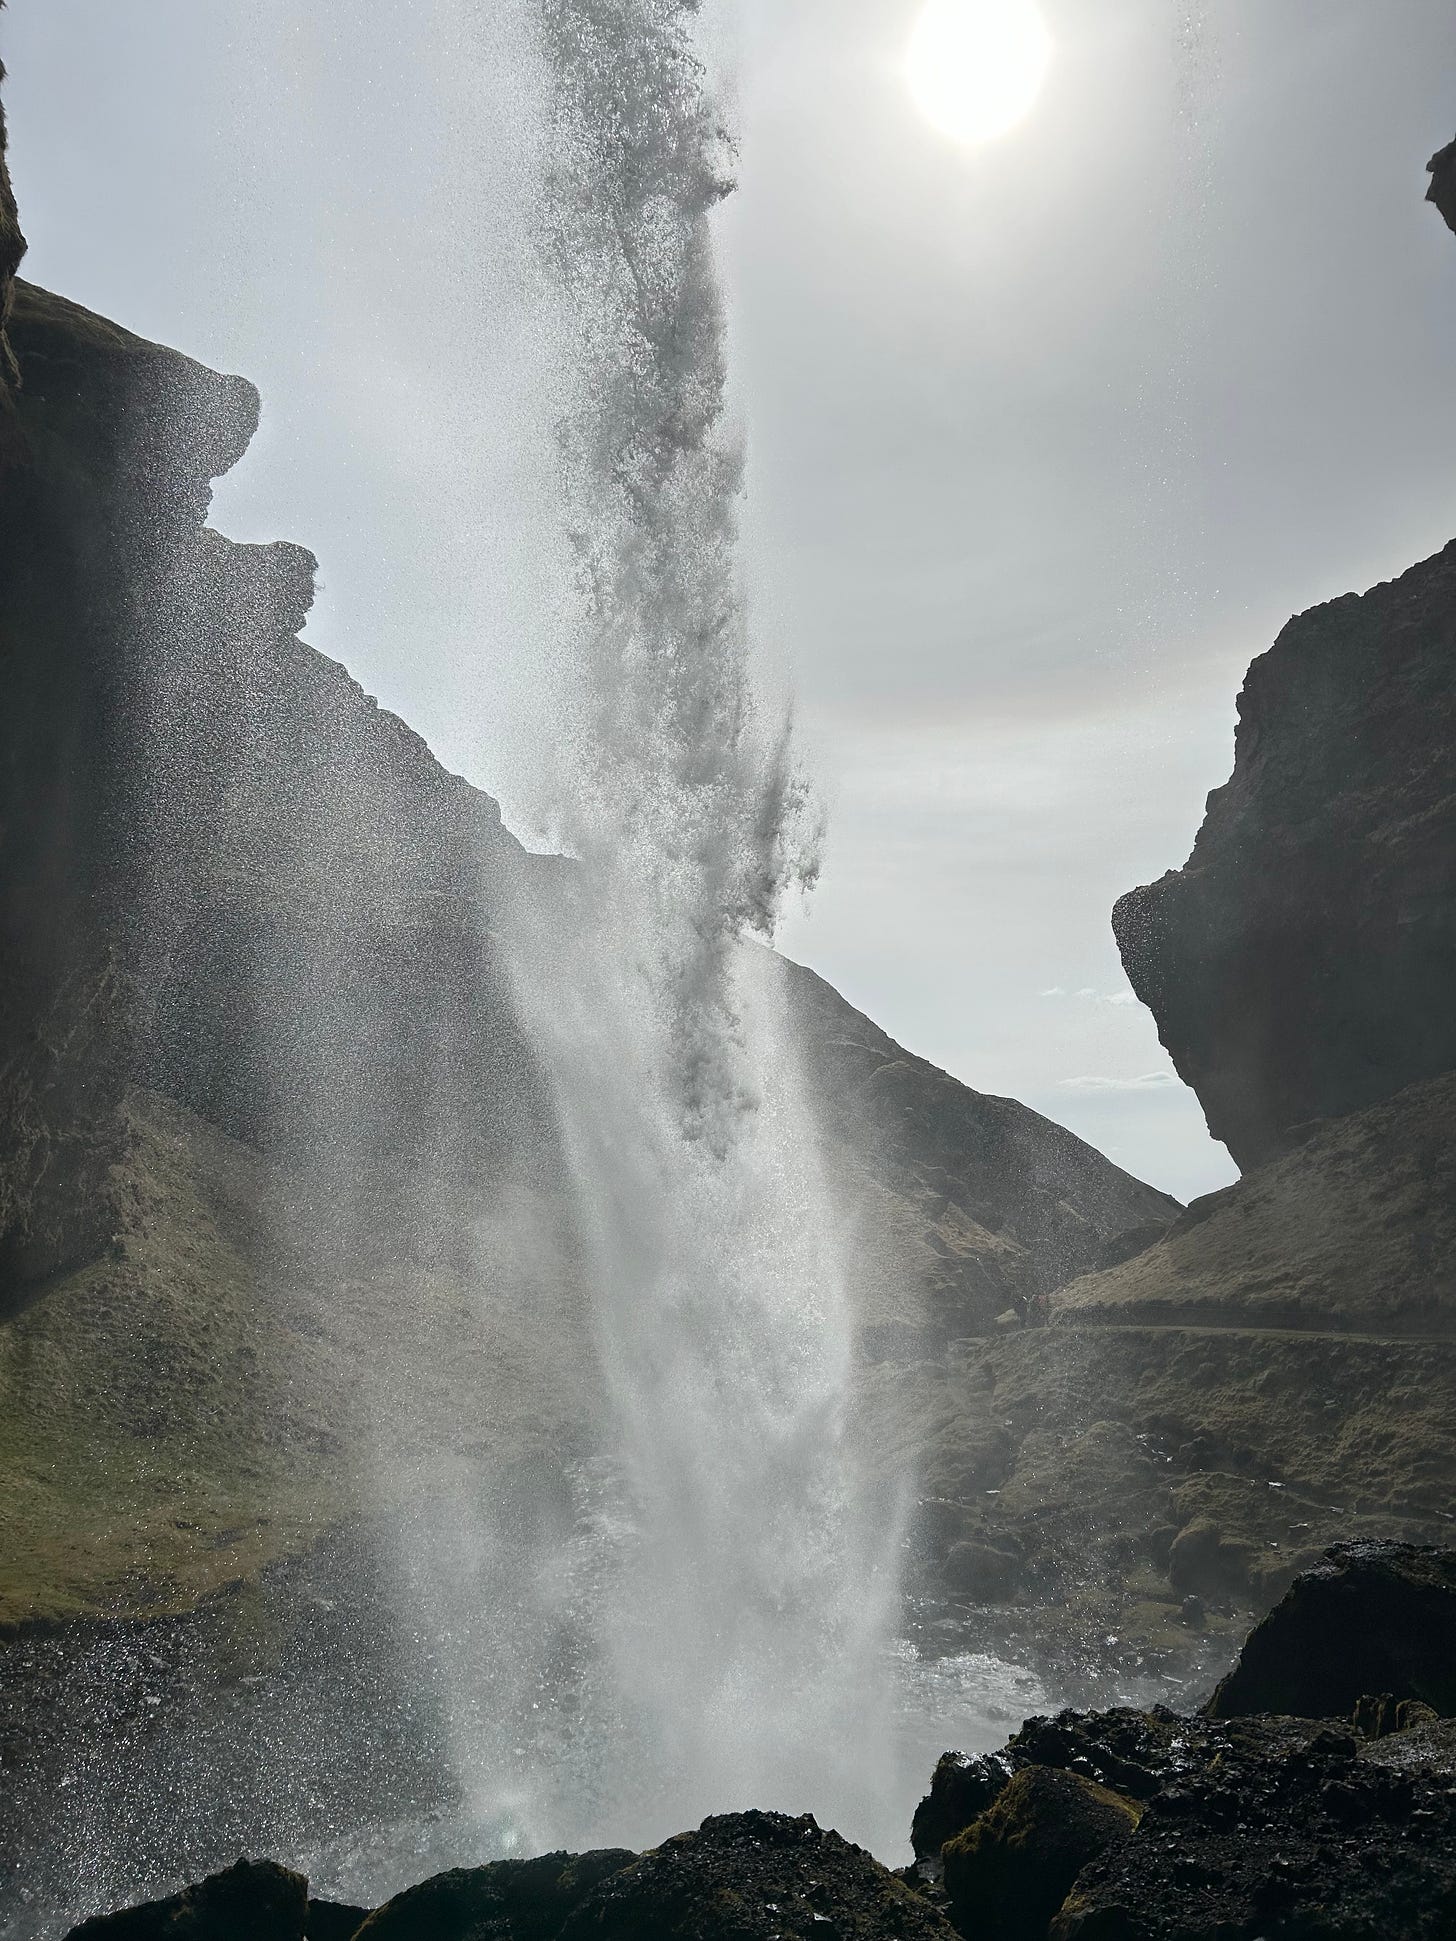 Secret waterfall in Iceland. 